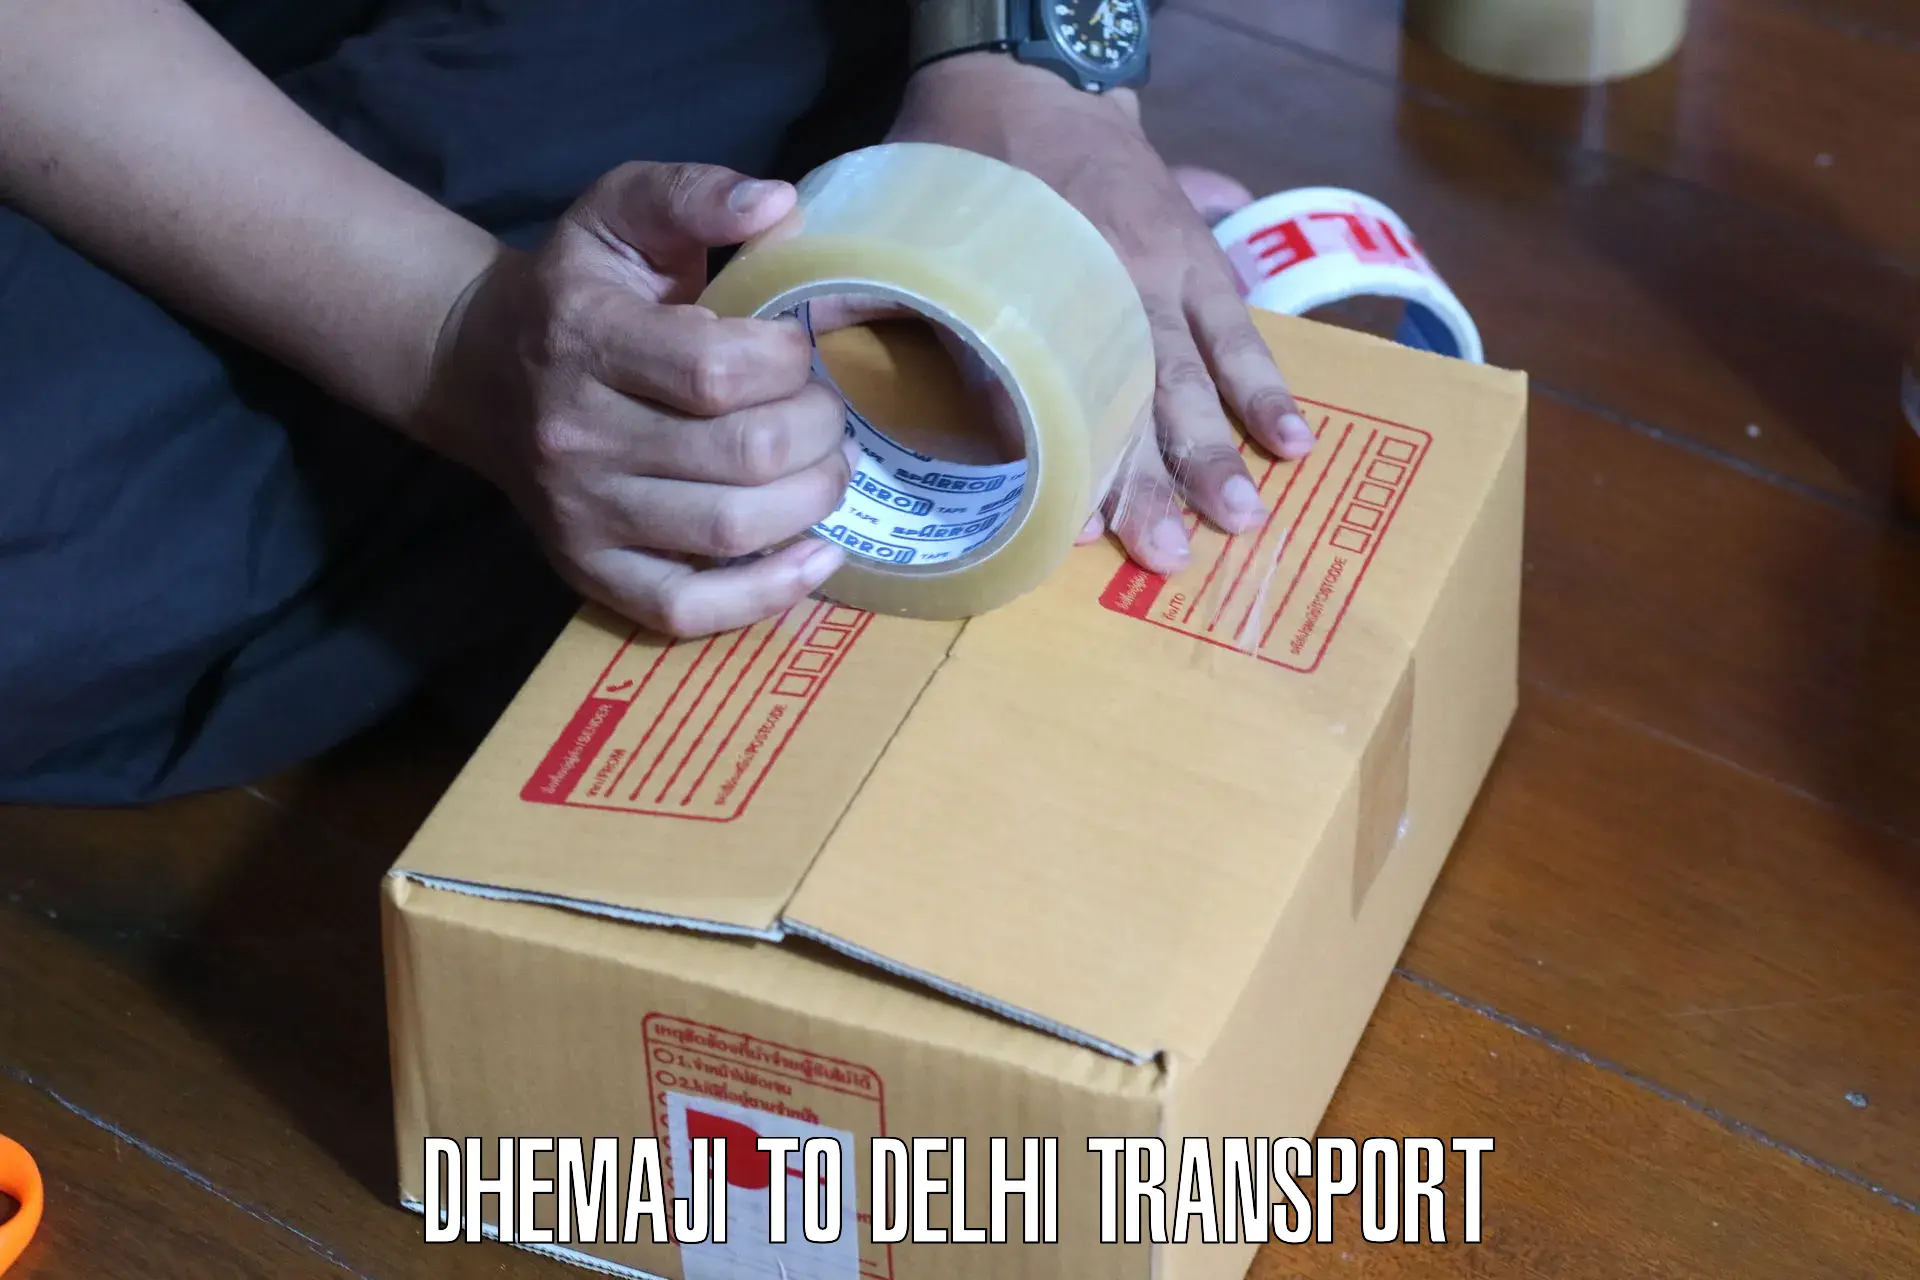 Furniture transport service Dhemaji to NCR